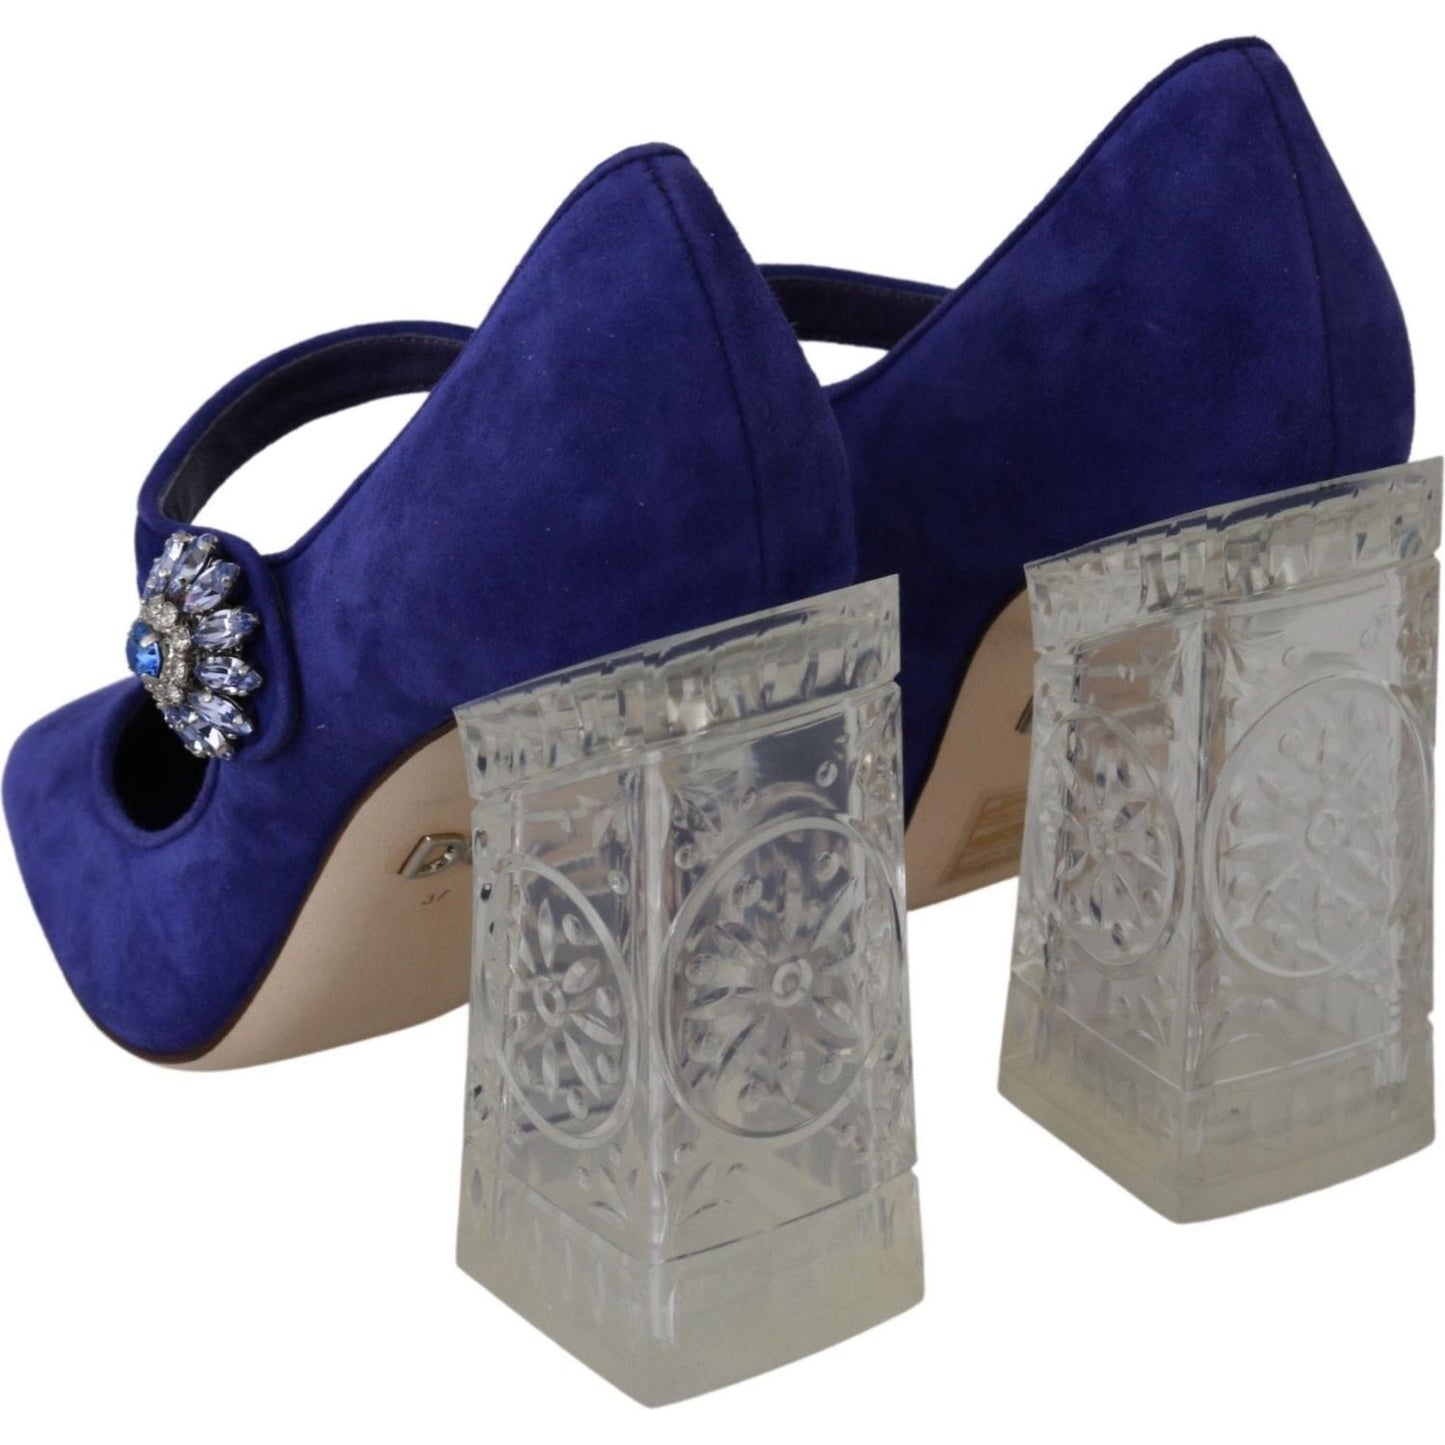 Dolce & Gabbana Elegant Purple Suede Mary Janes Pumps purple-suede-crystal-pumps-heels-shoes IMG_1743-df741906-950.jpg